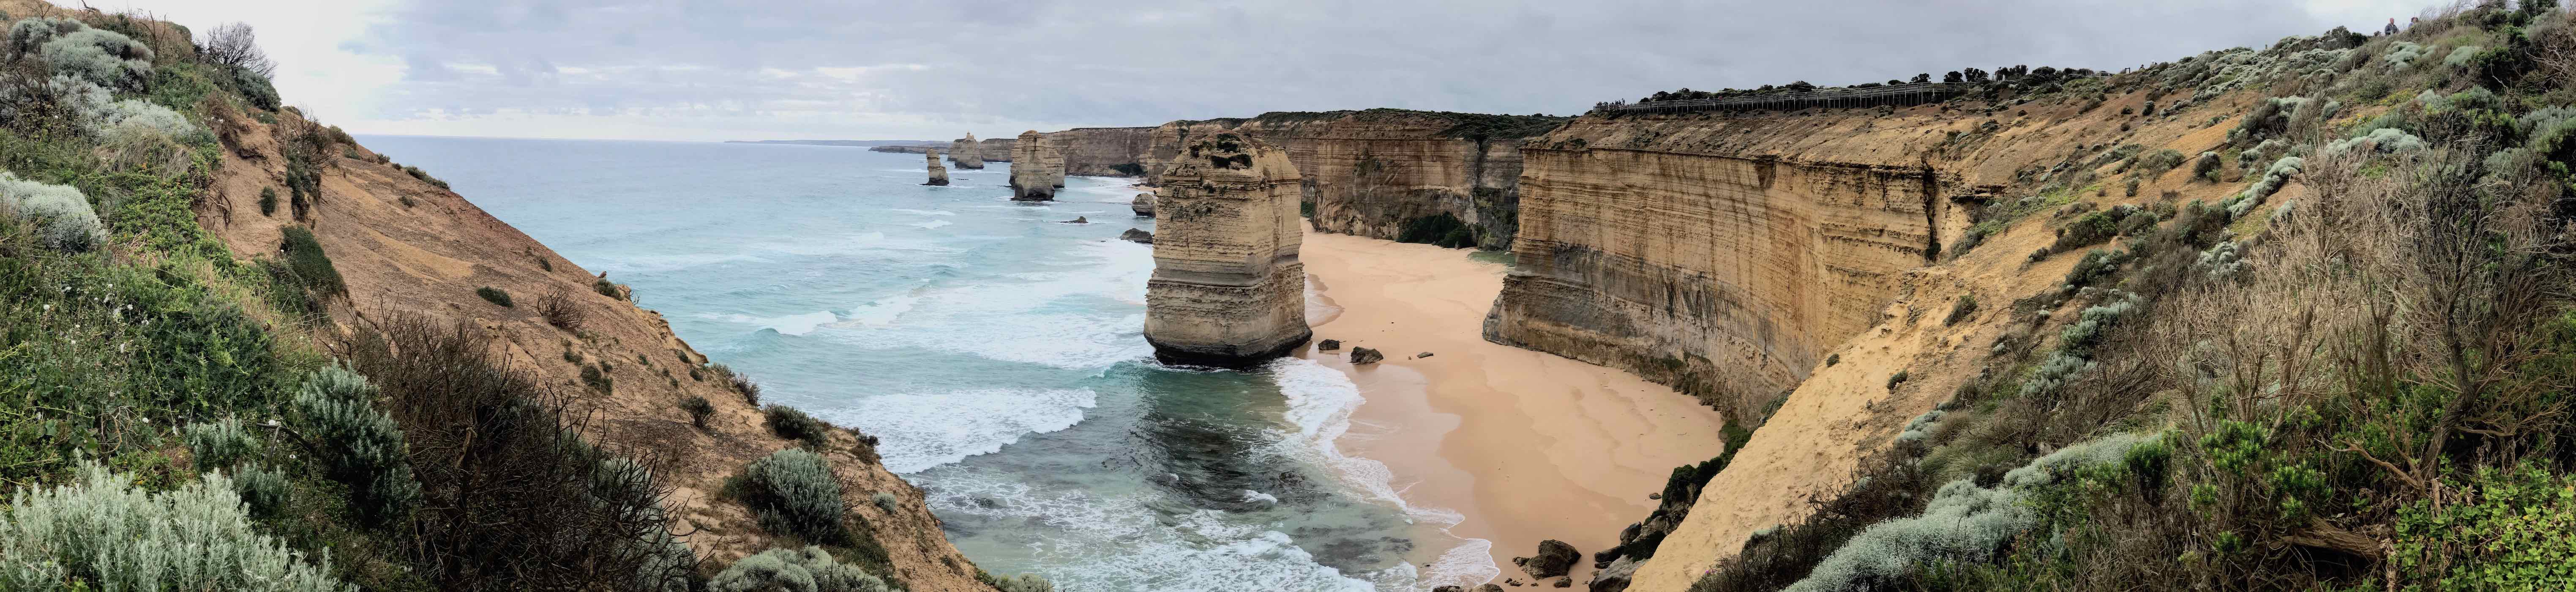 Panorama of Twelve Apostels in Australia